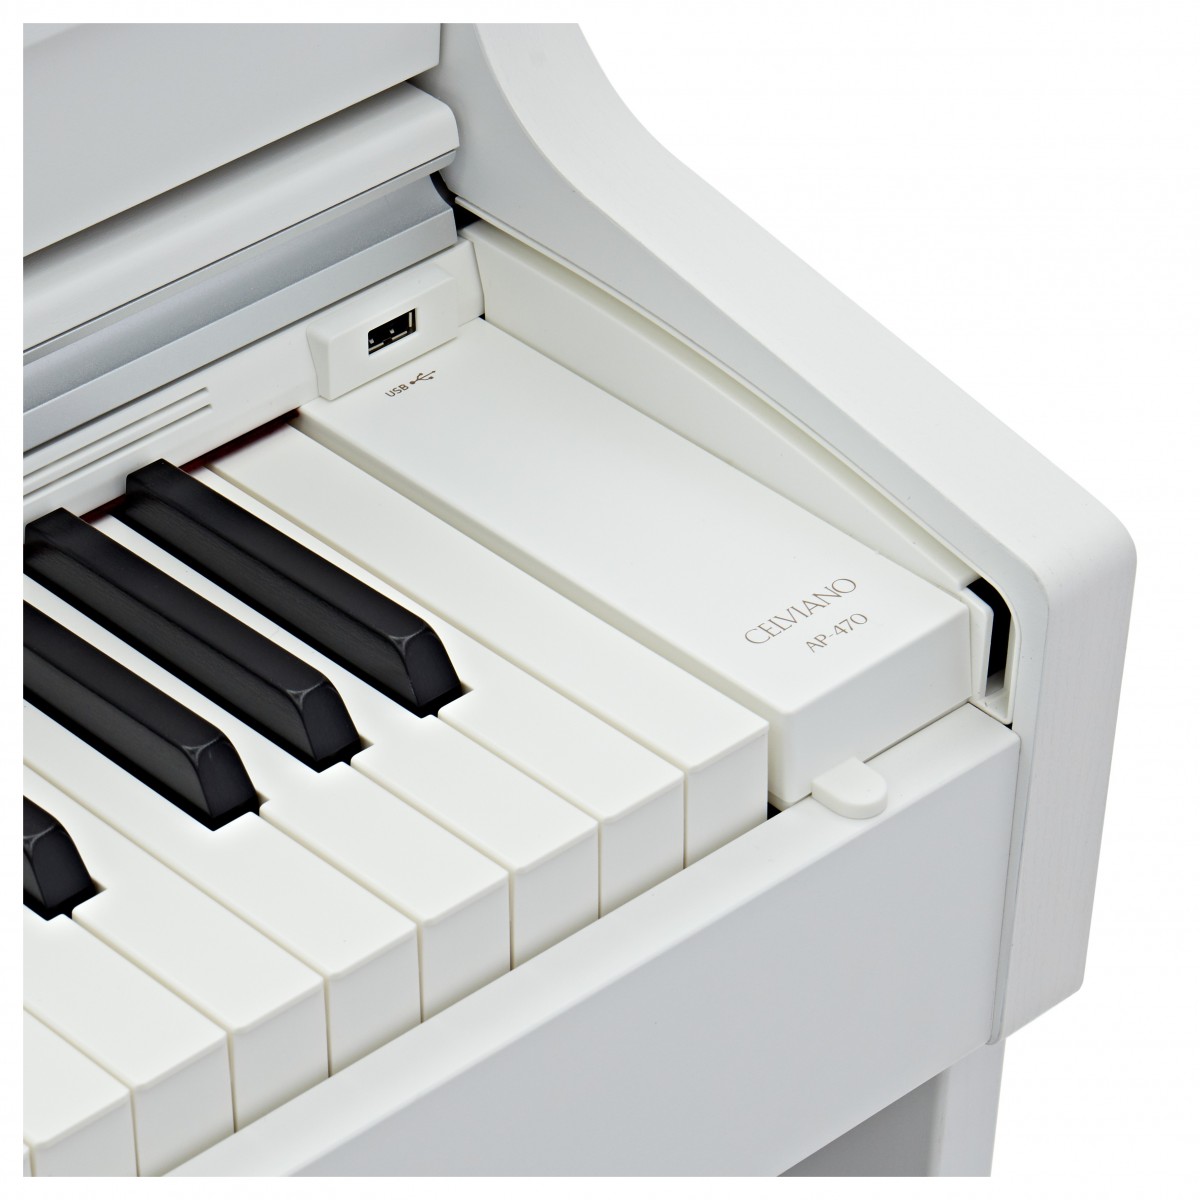 CASIO CELVIANO AP470 WE WHITE PIANOFORTE DIGITALE 88 TASTI COLORE BIANCO 6